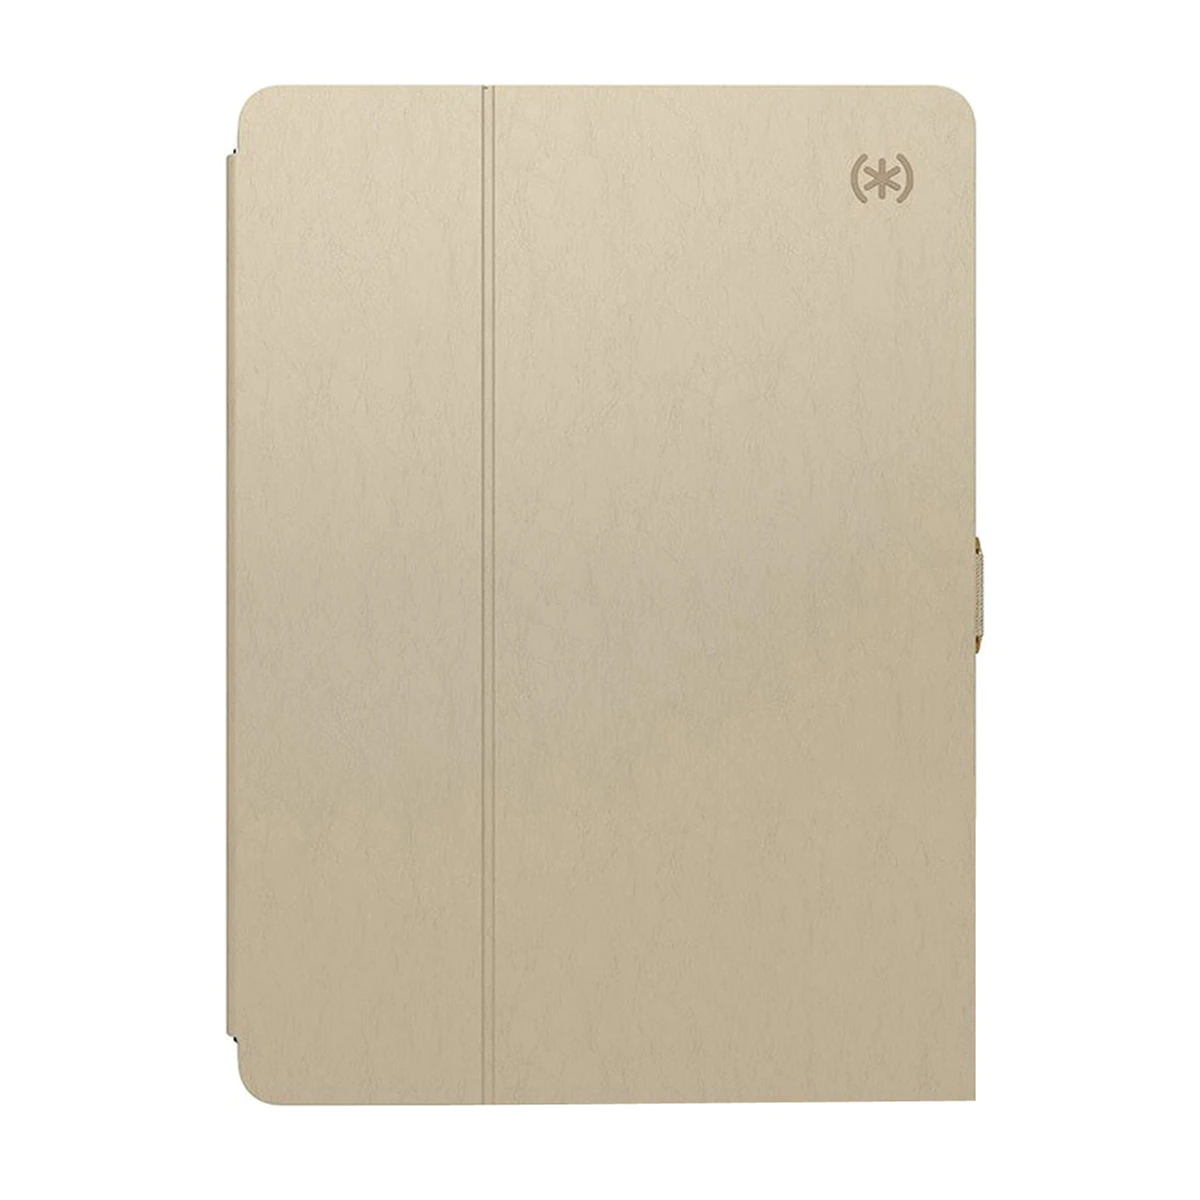 Funda rígida camel Speck Balance Folio para iPad de 24,64 cm (9,7″)